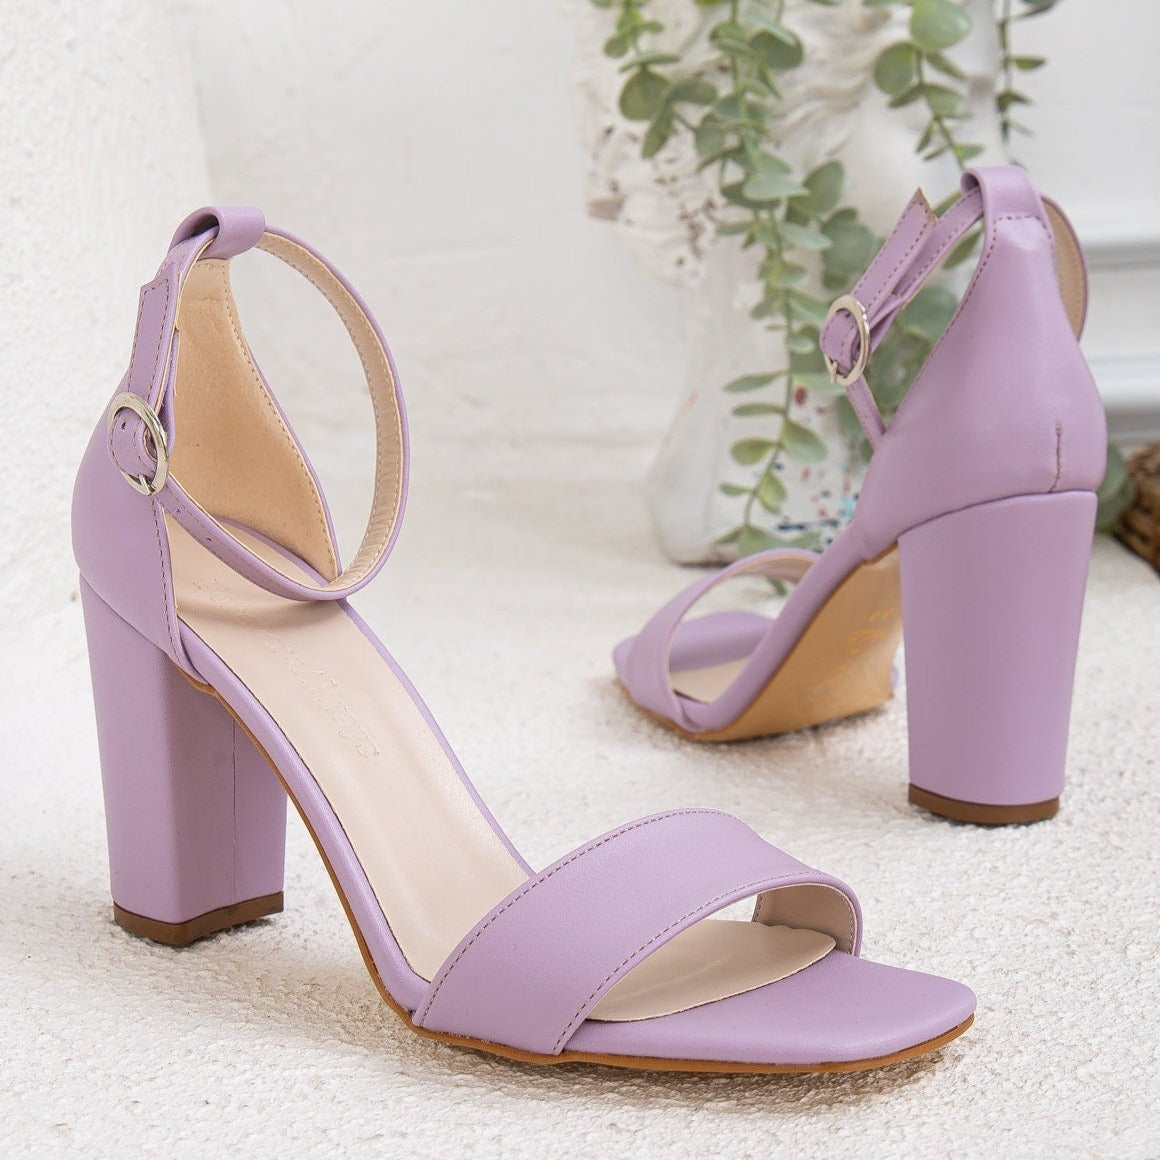 Lavender Summer Dress Heels, Lavender Open Toe Block Heels, Bridal Shoes, Shoes for Bride, Lavender Heels, Lavender Dress Heels, Vegan Gift